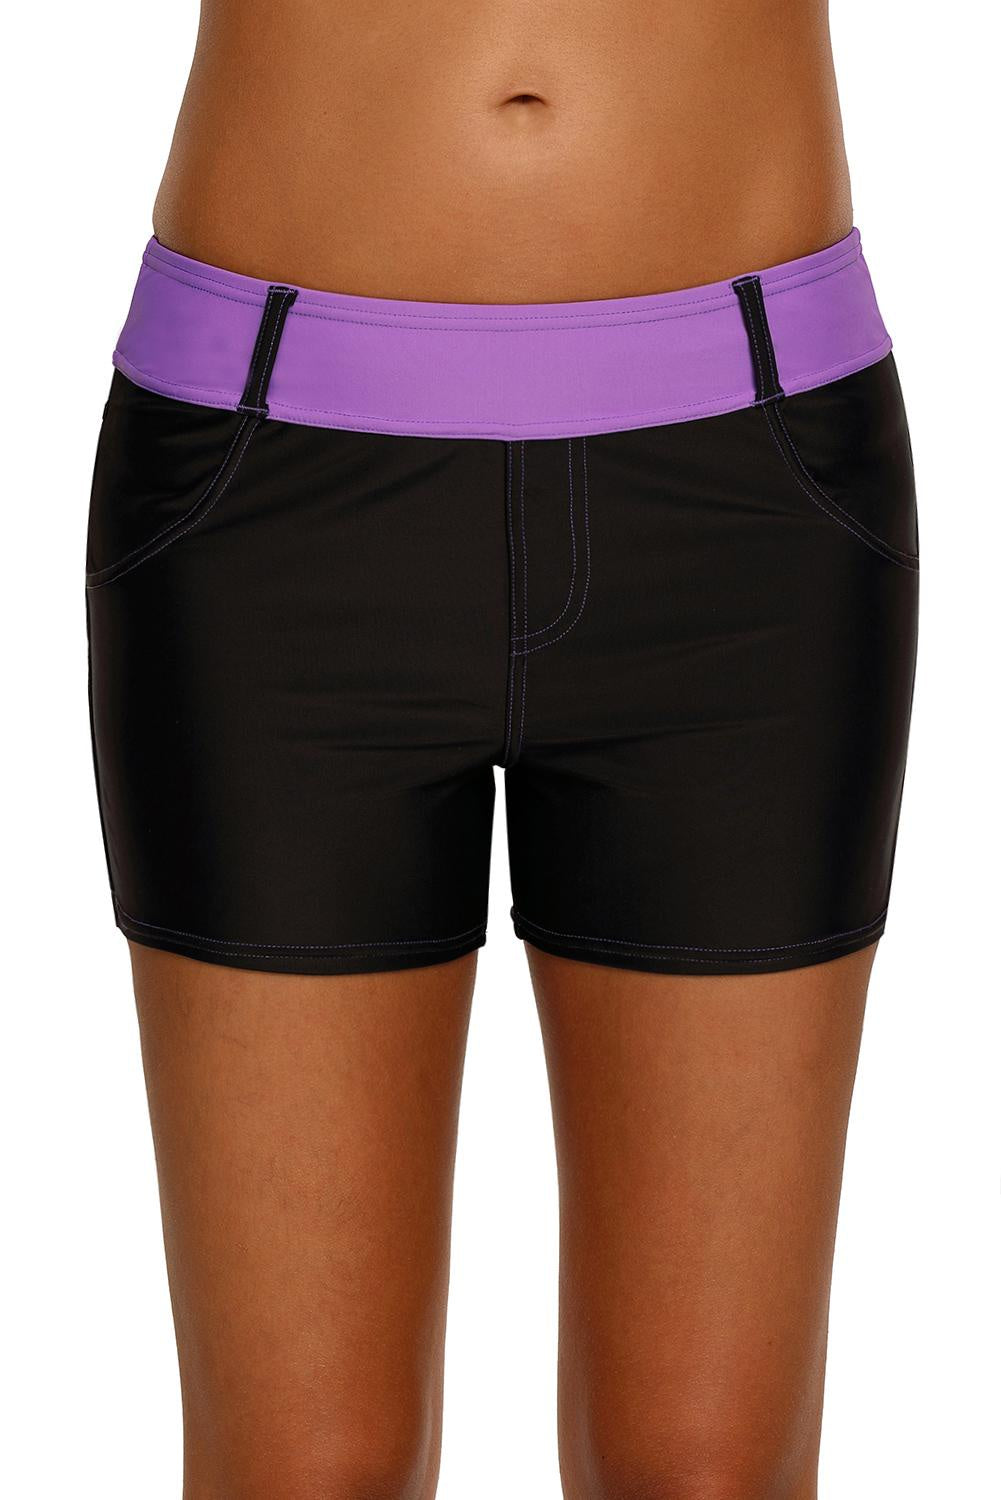 Purple Waistband Black Athletic Shorts